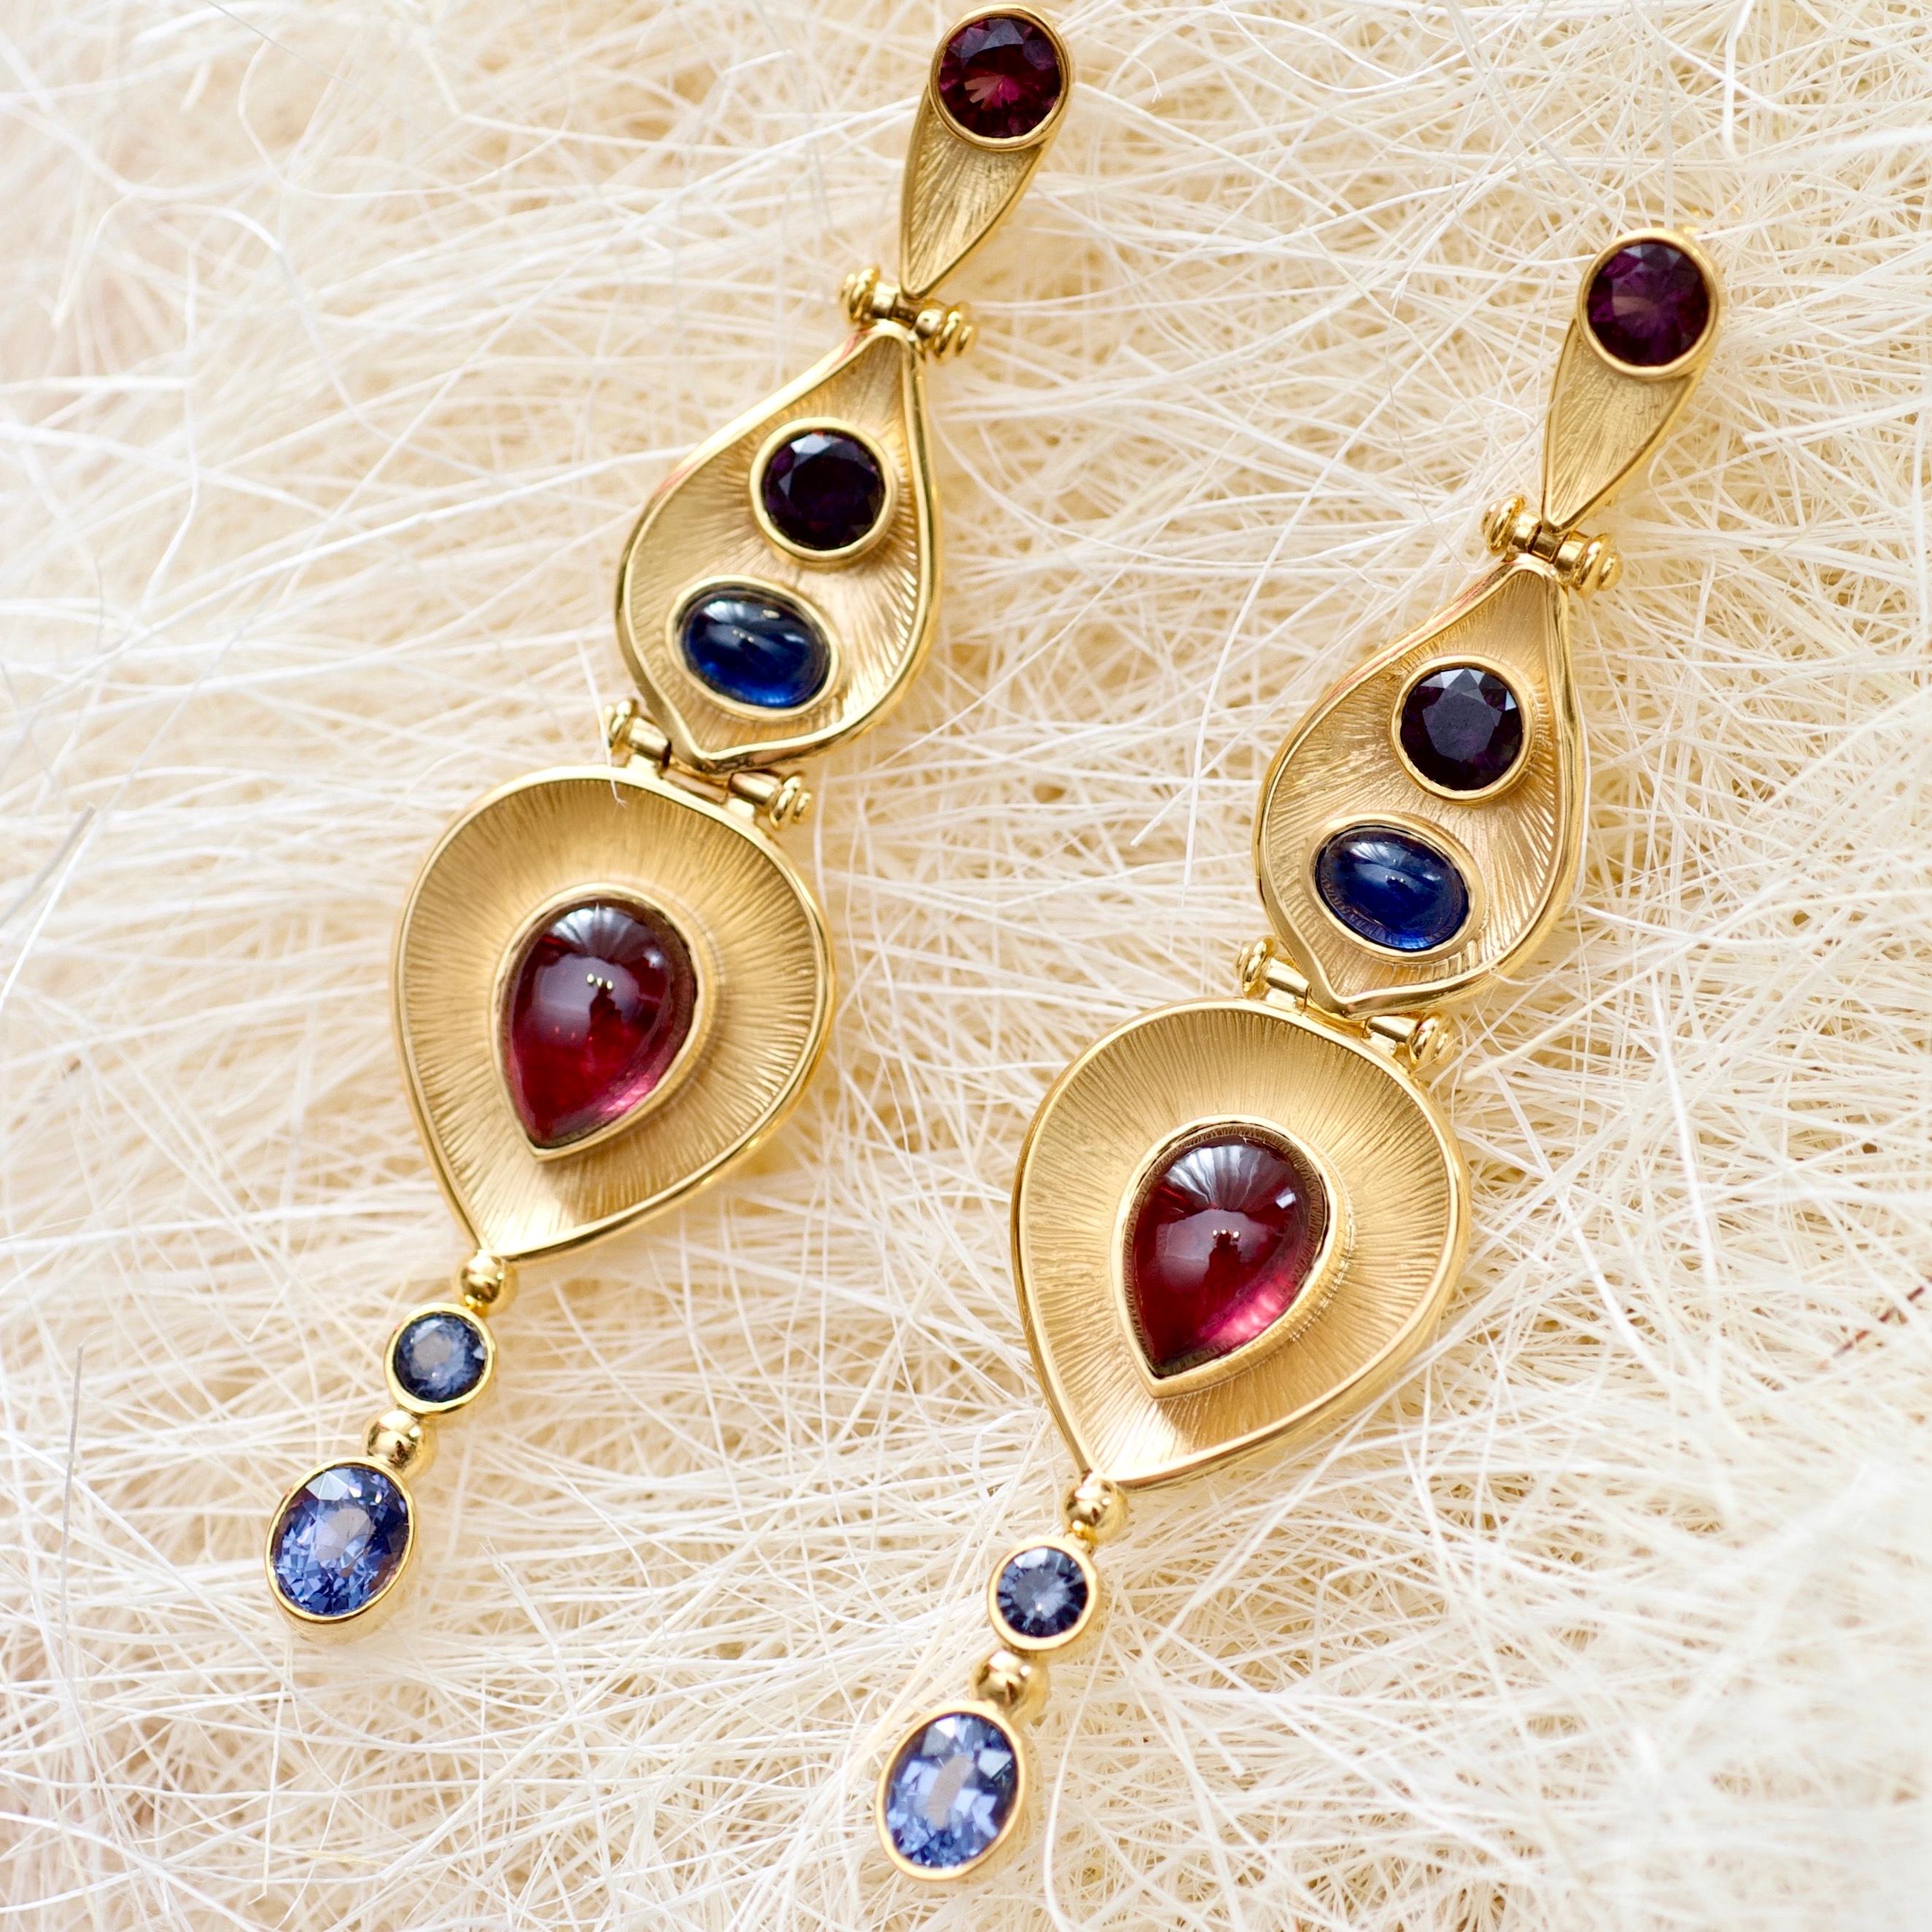 Egyptian Inspired Turquoise Garnet Earring***.